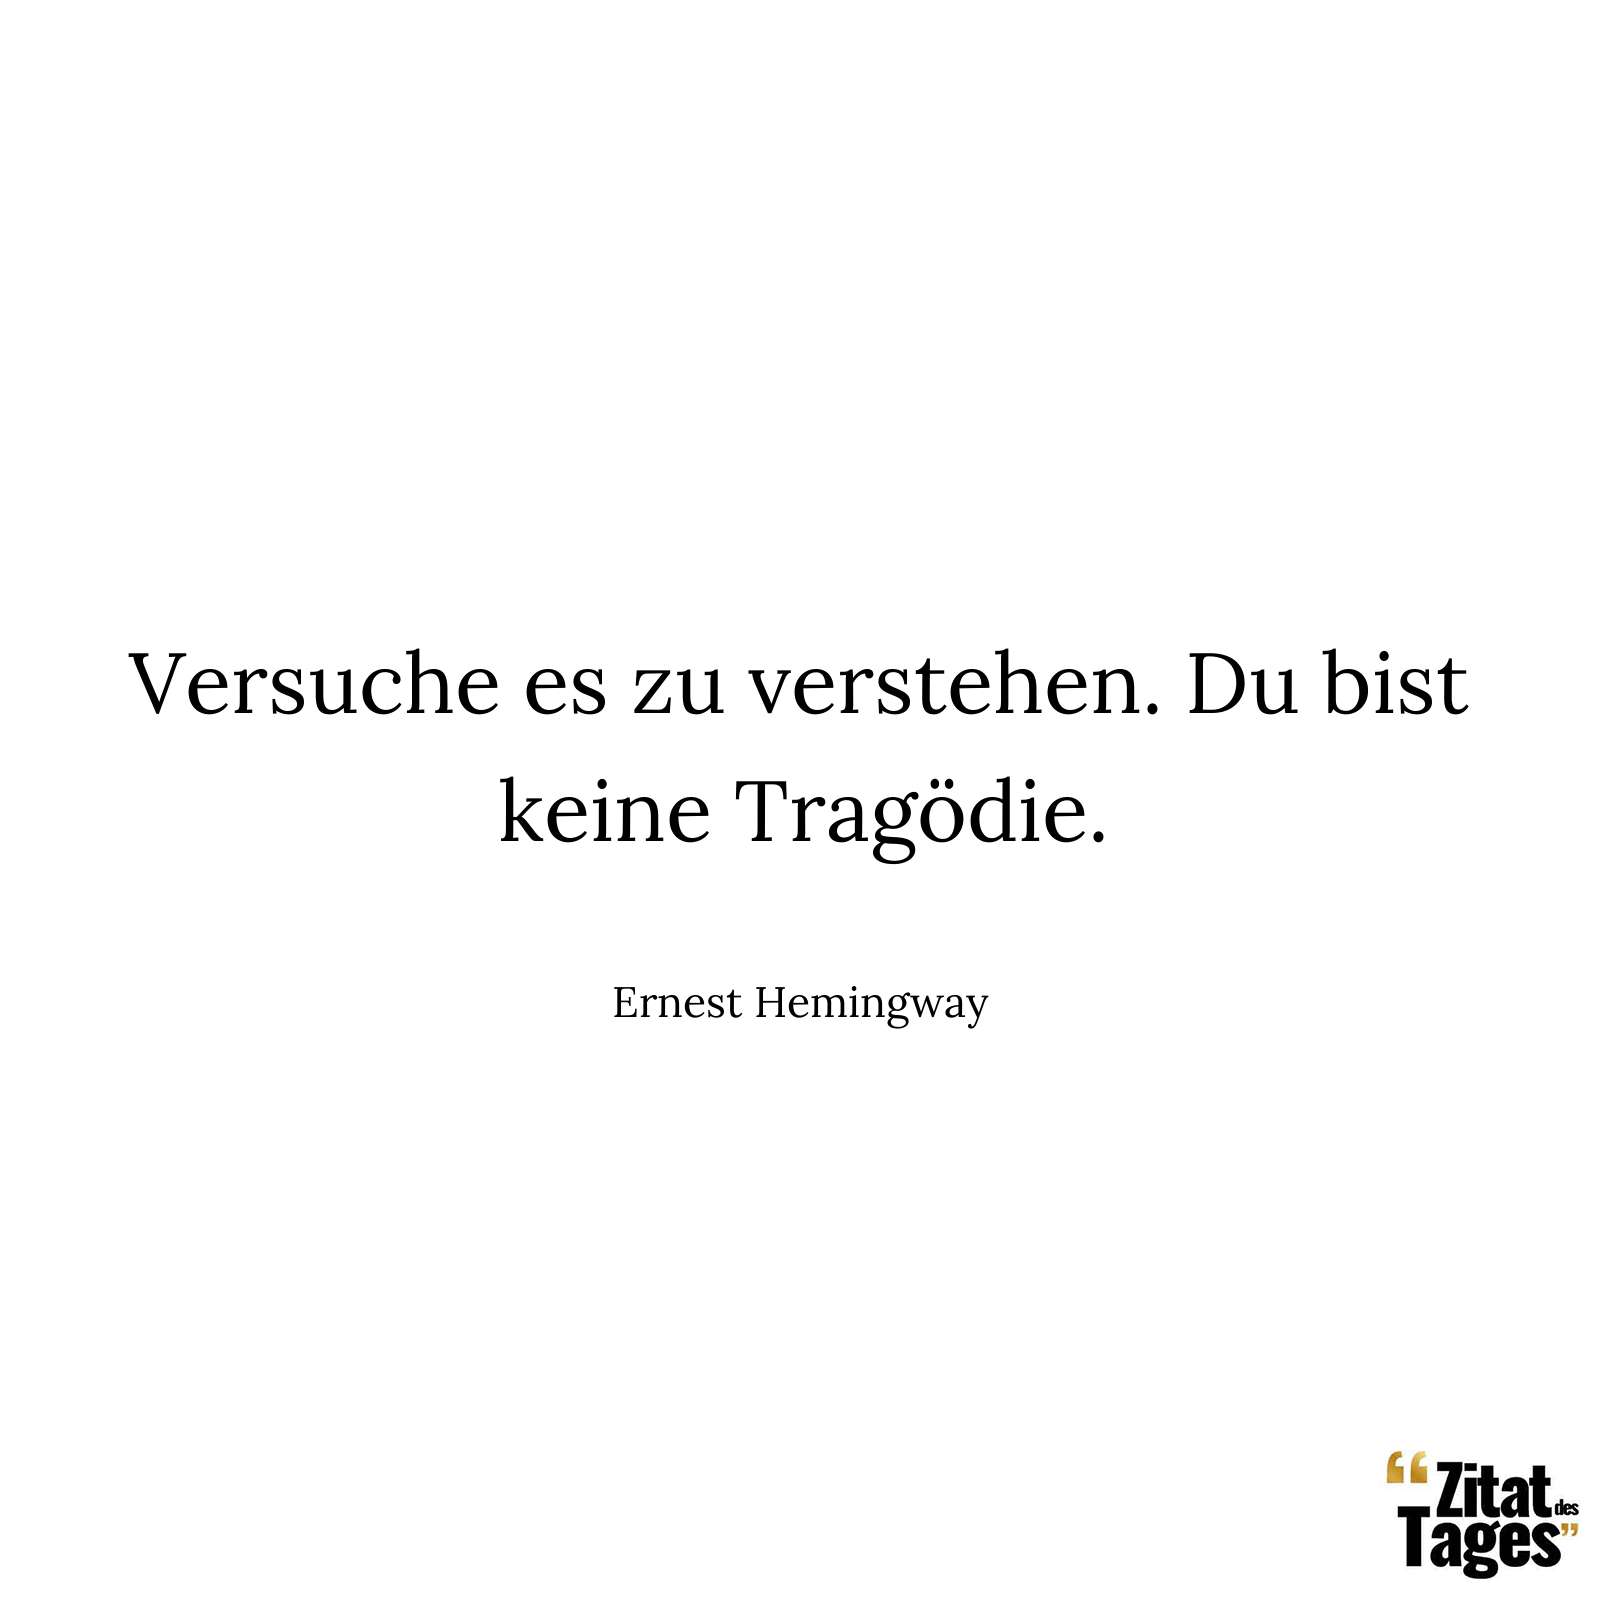 Versuche es zu verstehen. Du bist keine Tragödie. - Ernest Hemingway